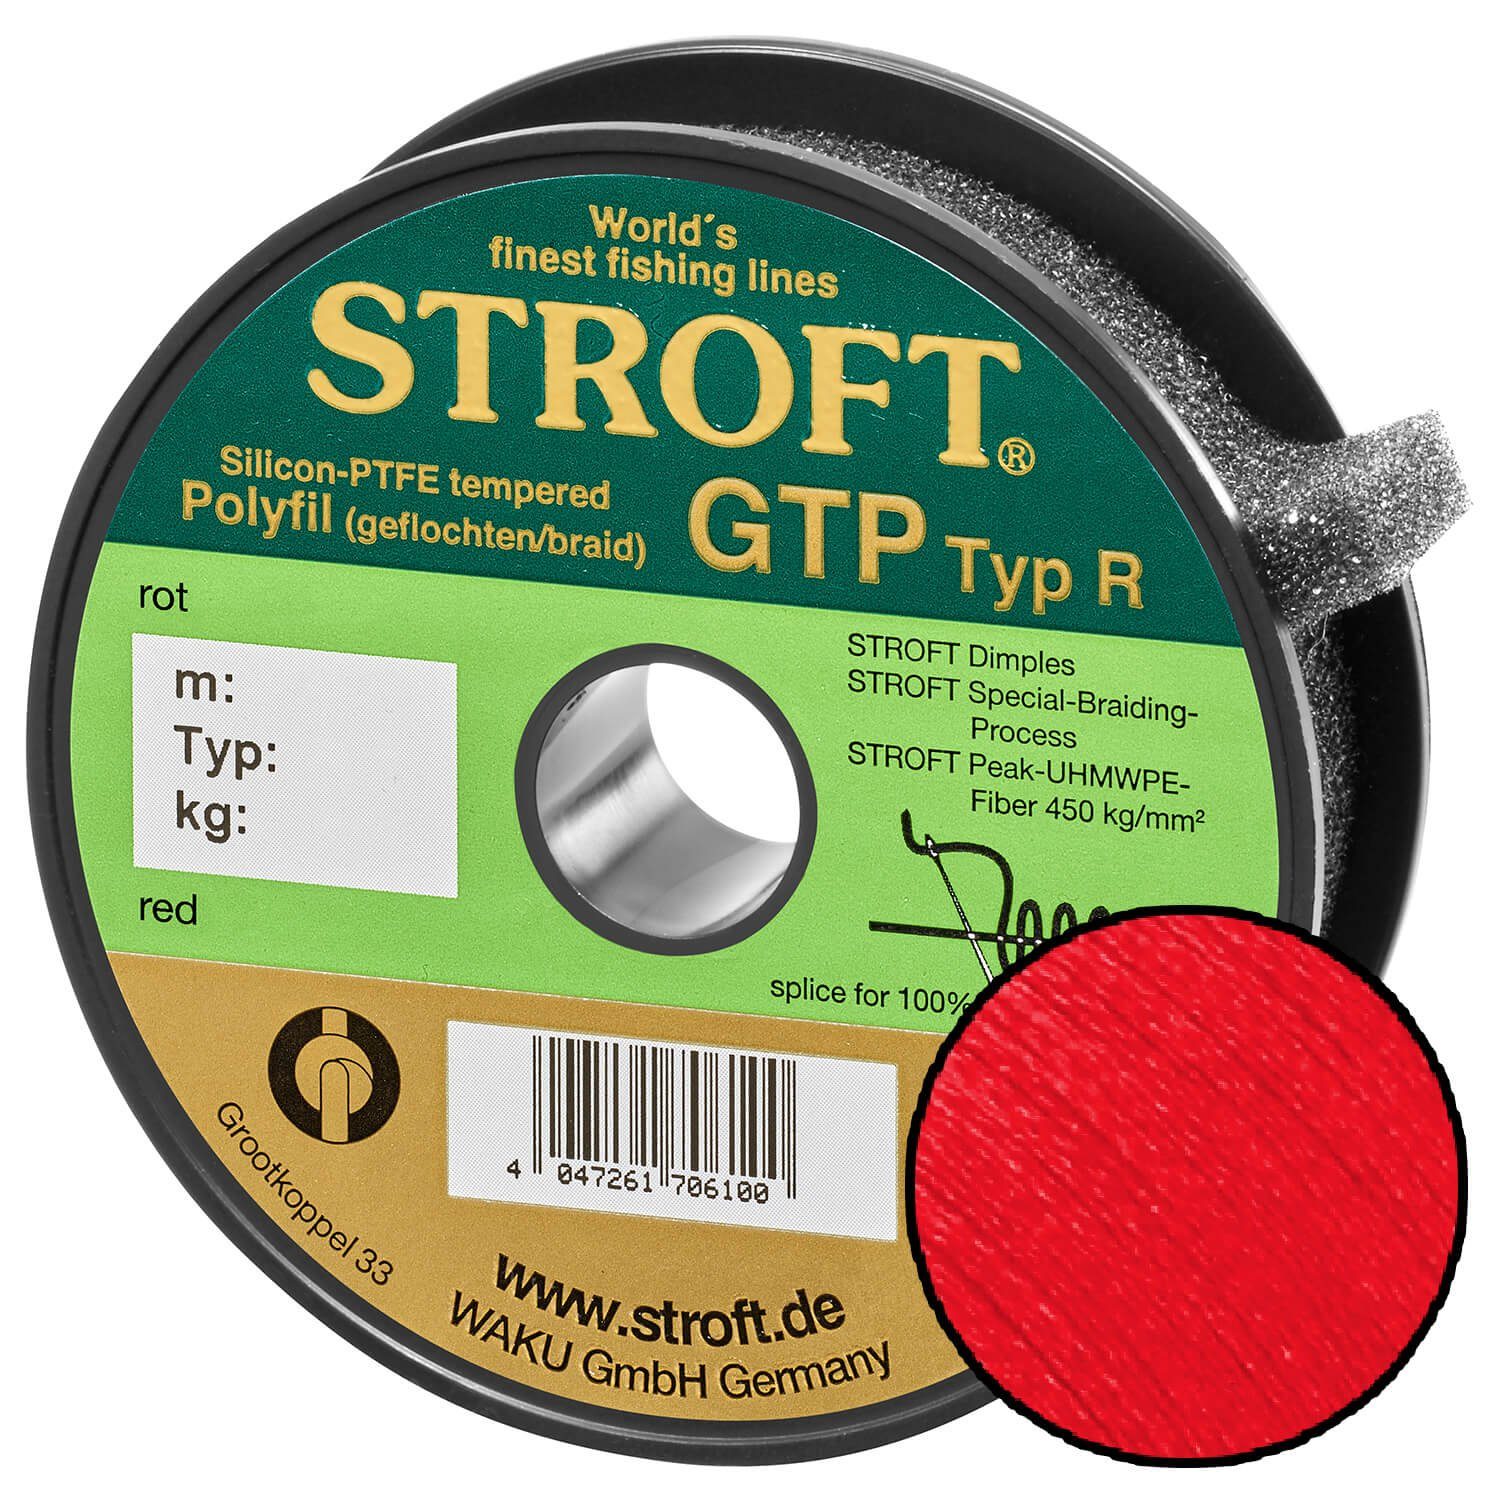 Stroft Angelschnur STROFT GTP Typ R Geflochtene Angelschnur 150m rot, 150 m Länge, 0.18 mm Fadendurchmesser, (1-St), 5.5kg Tragkraft